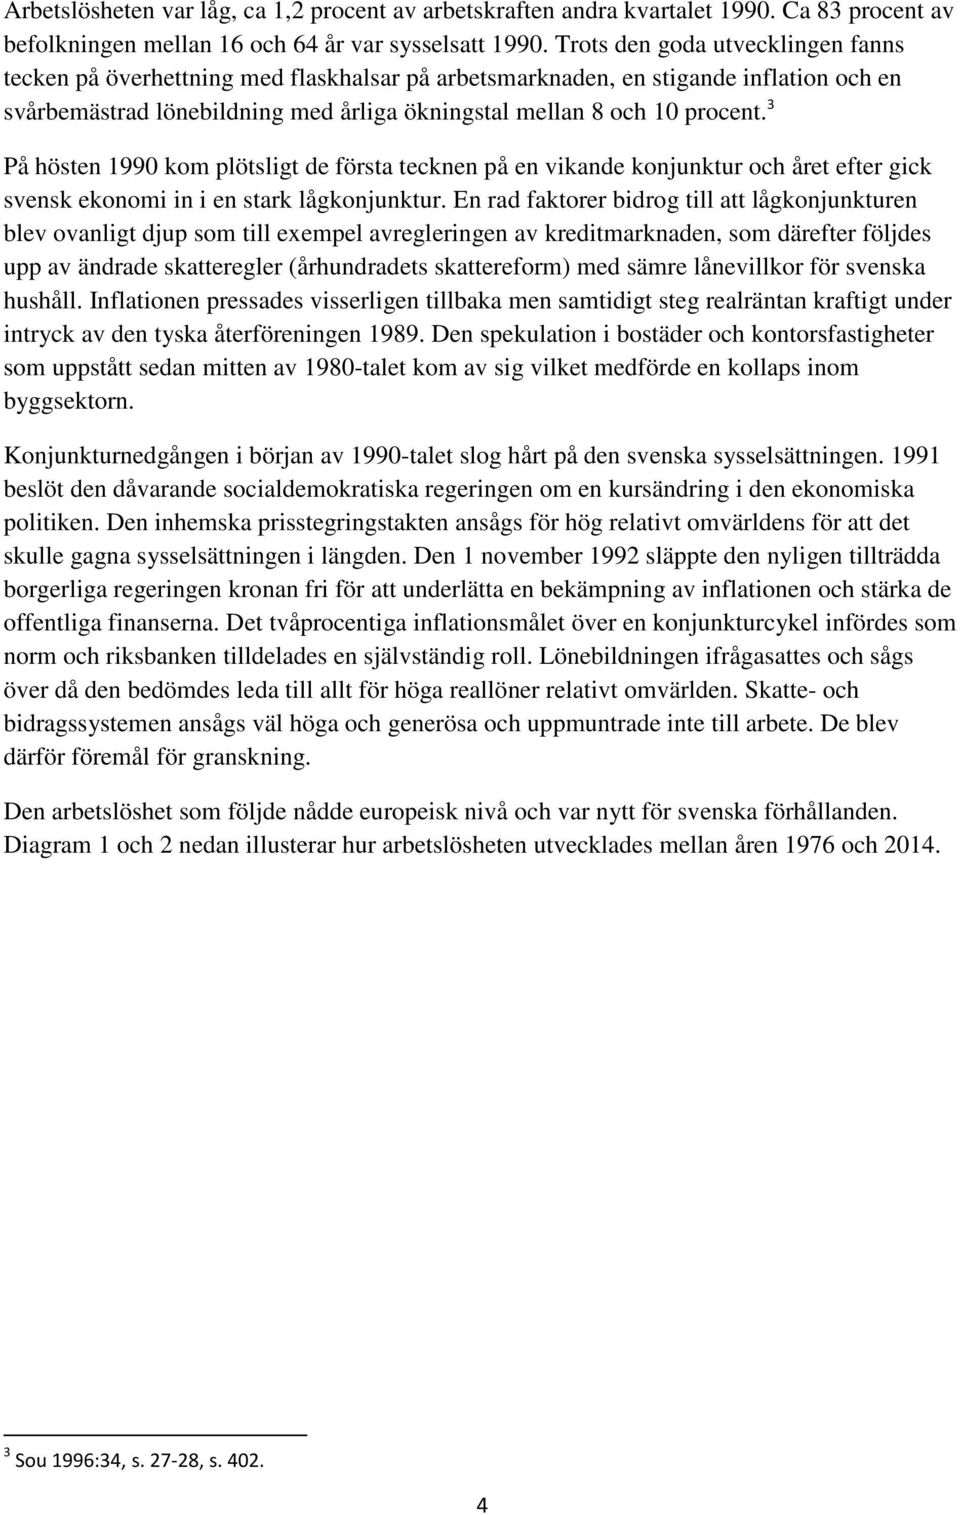 3 På hösten 1990 kom plötsligt de första tecknen på en vikande konjunktur och året efter gick svensk ekonomi in i en stark lågkonjunktur.